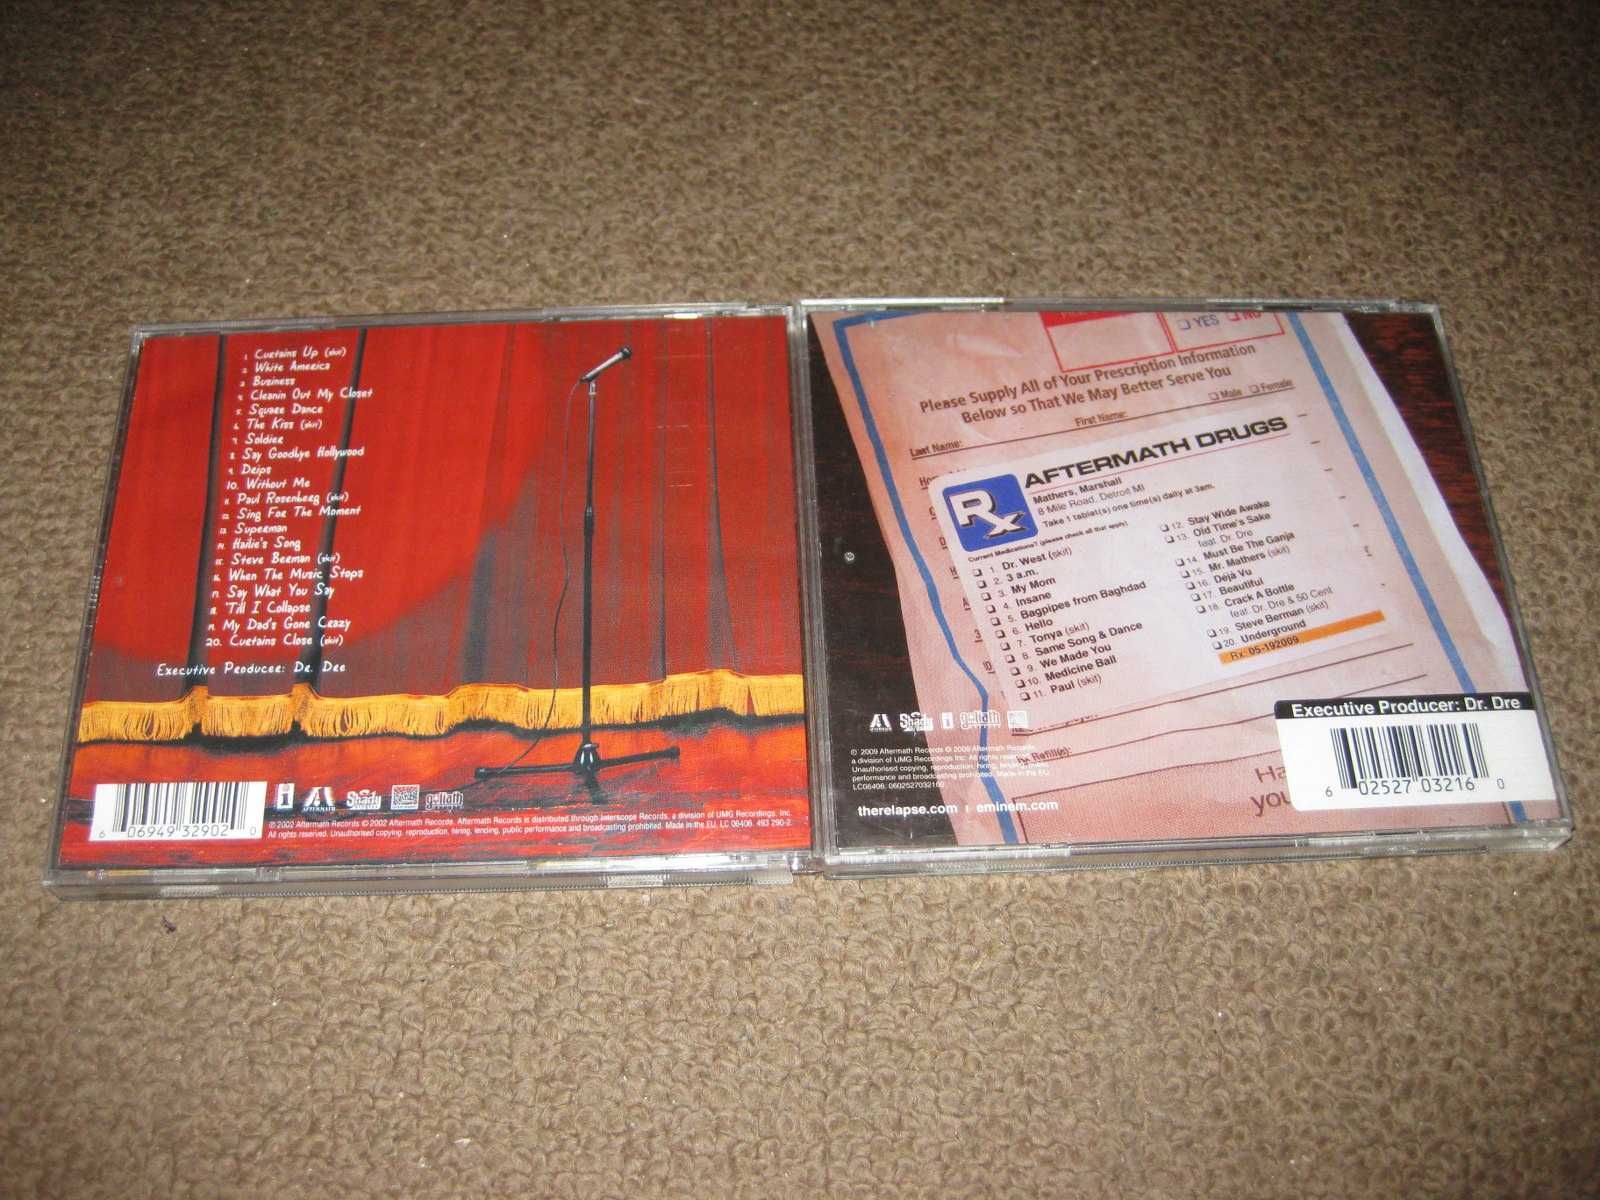 2 CDs do "Eminem" Portes Grátis!